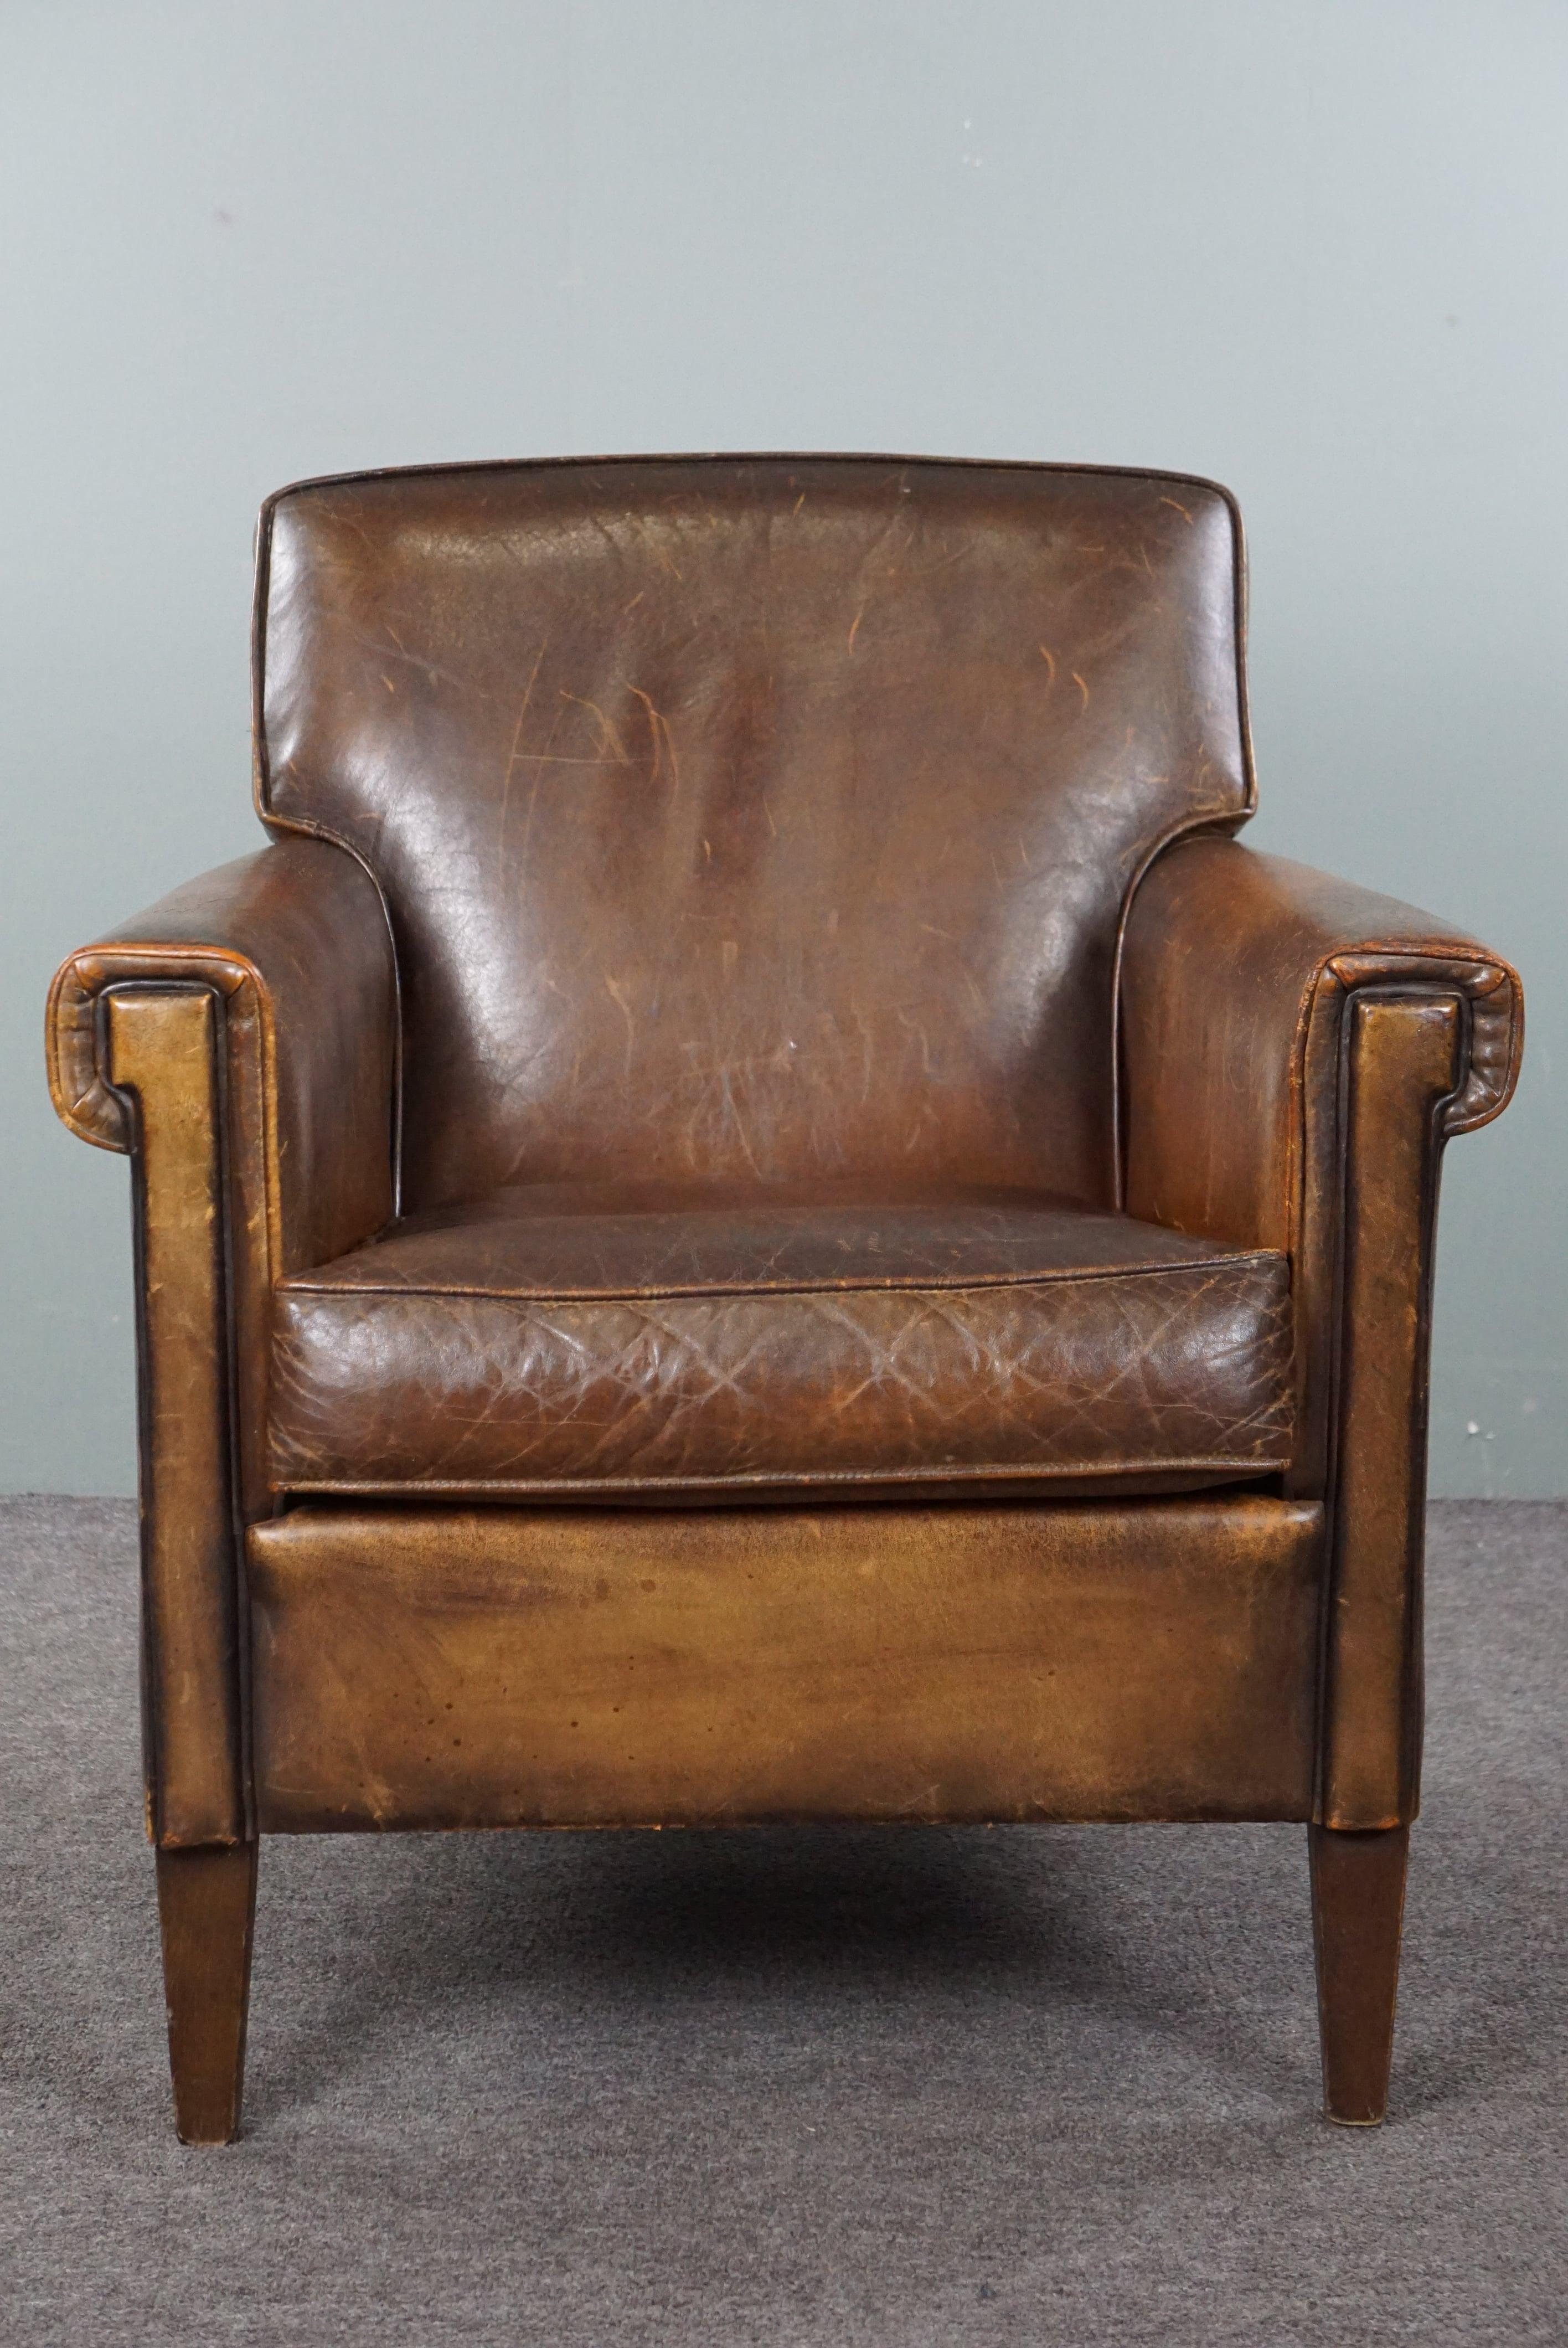 Angeboten wird dieser atemberaubende Sessel aus Schafsleder mit einer schönen Patina und charmanten Details. Wir freuen uns, Ihnen diesen Sessel präsentieren zu können. Es ist ein Modell, das man nicht oft sieht, und unserer Meinung nach ist es sehr